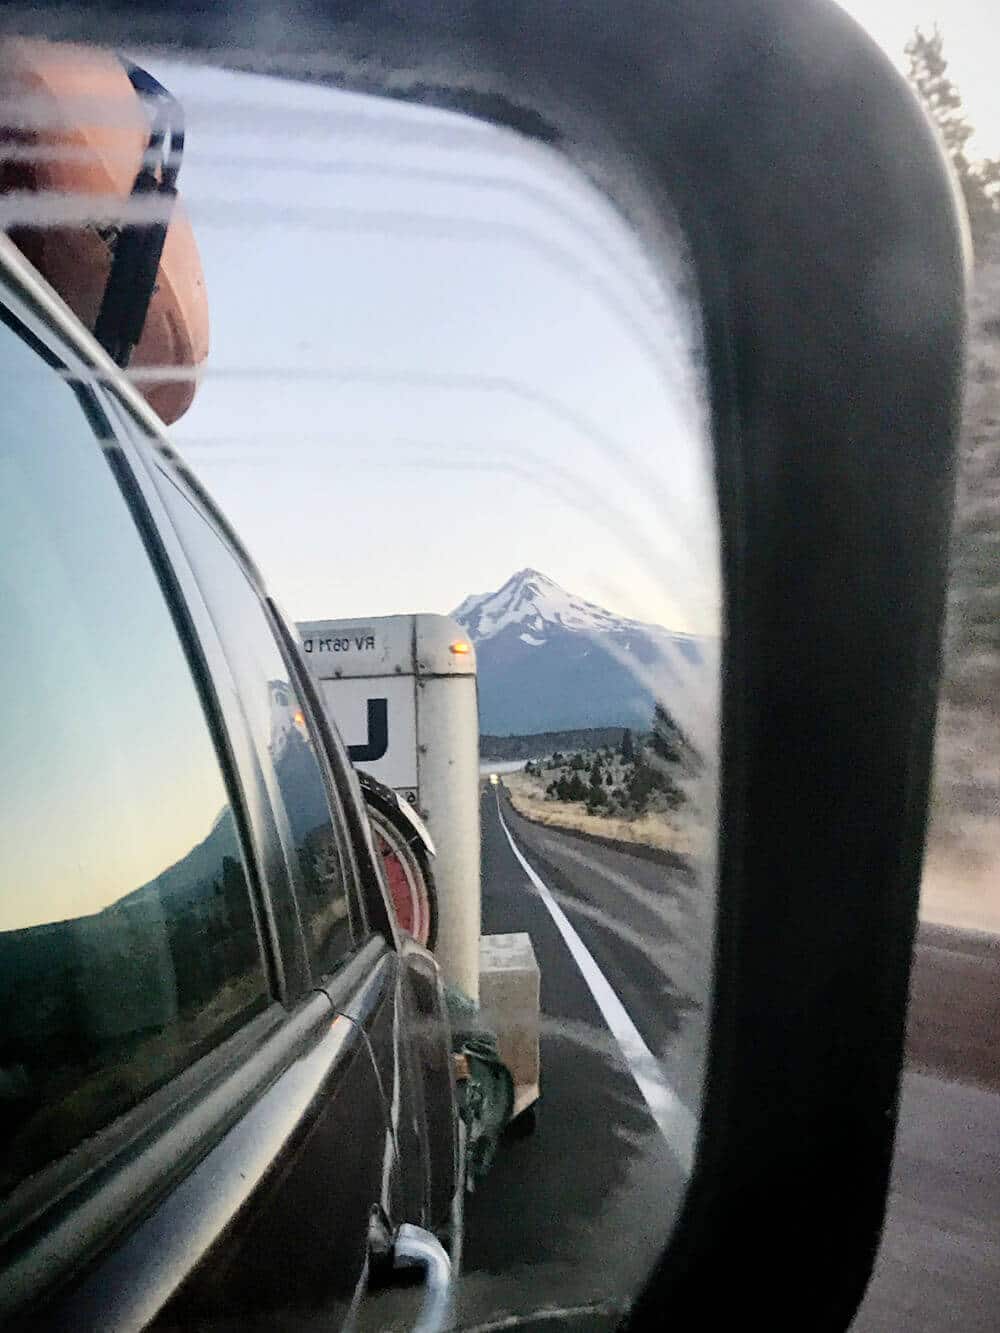 Mount Shasta at sunrise